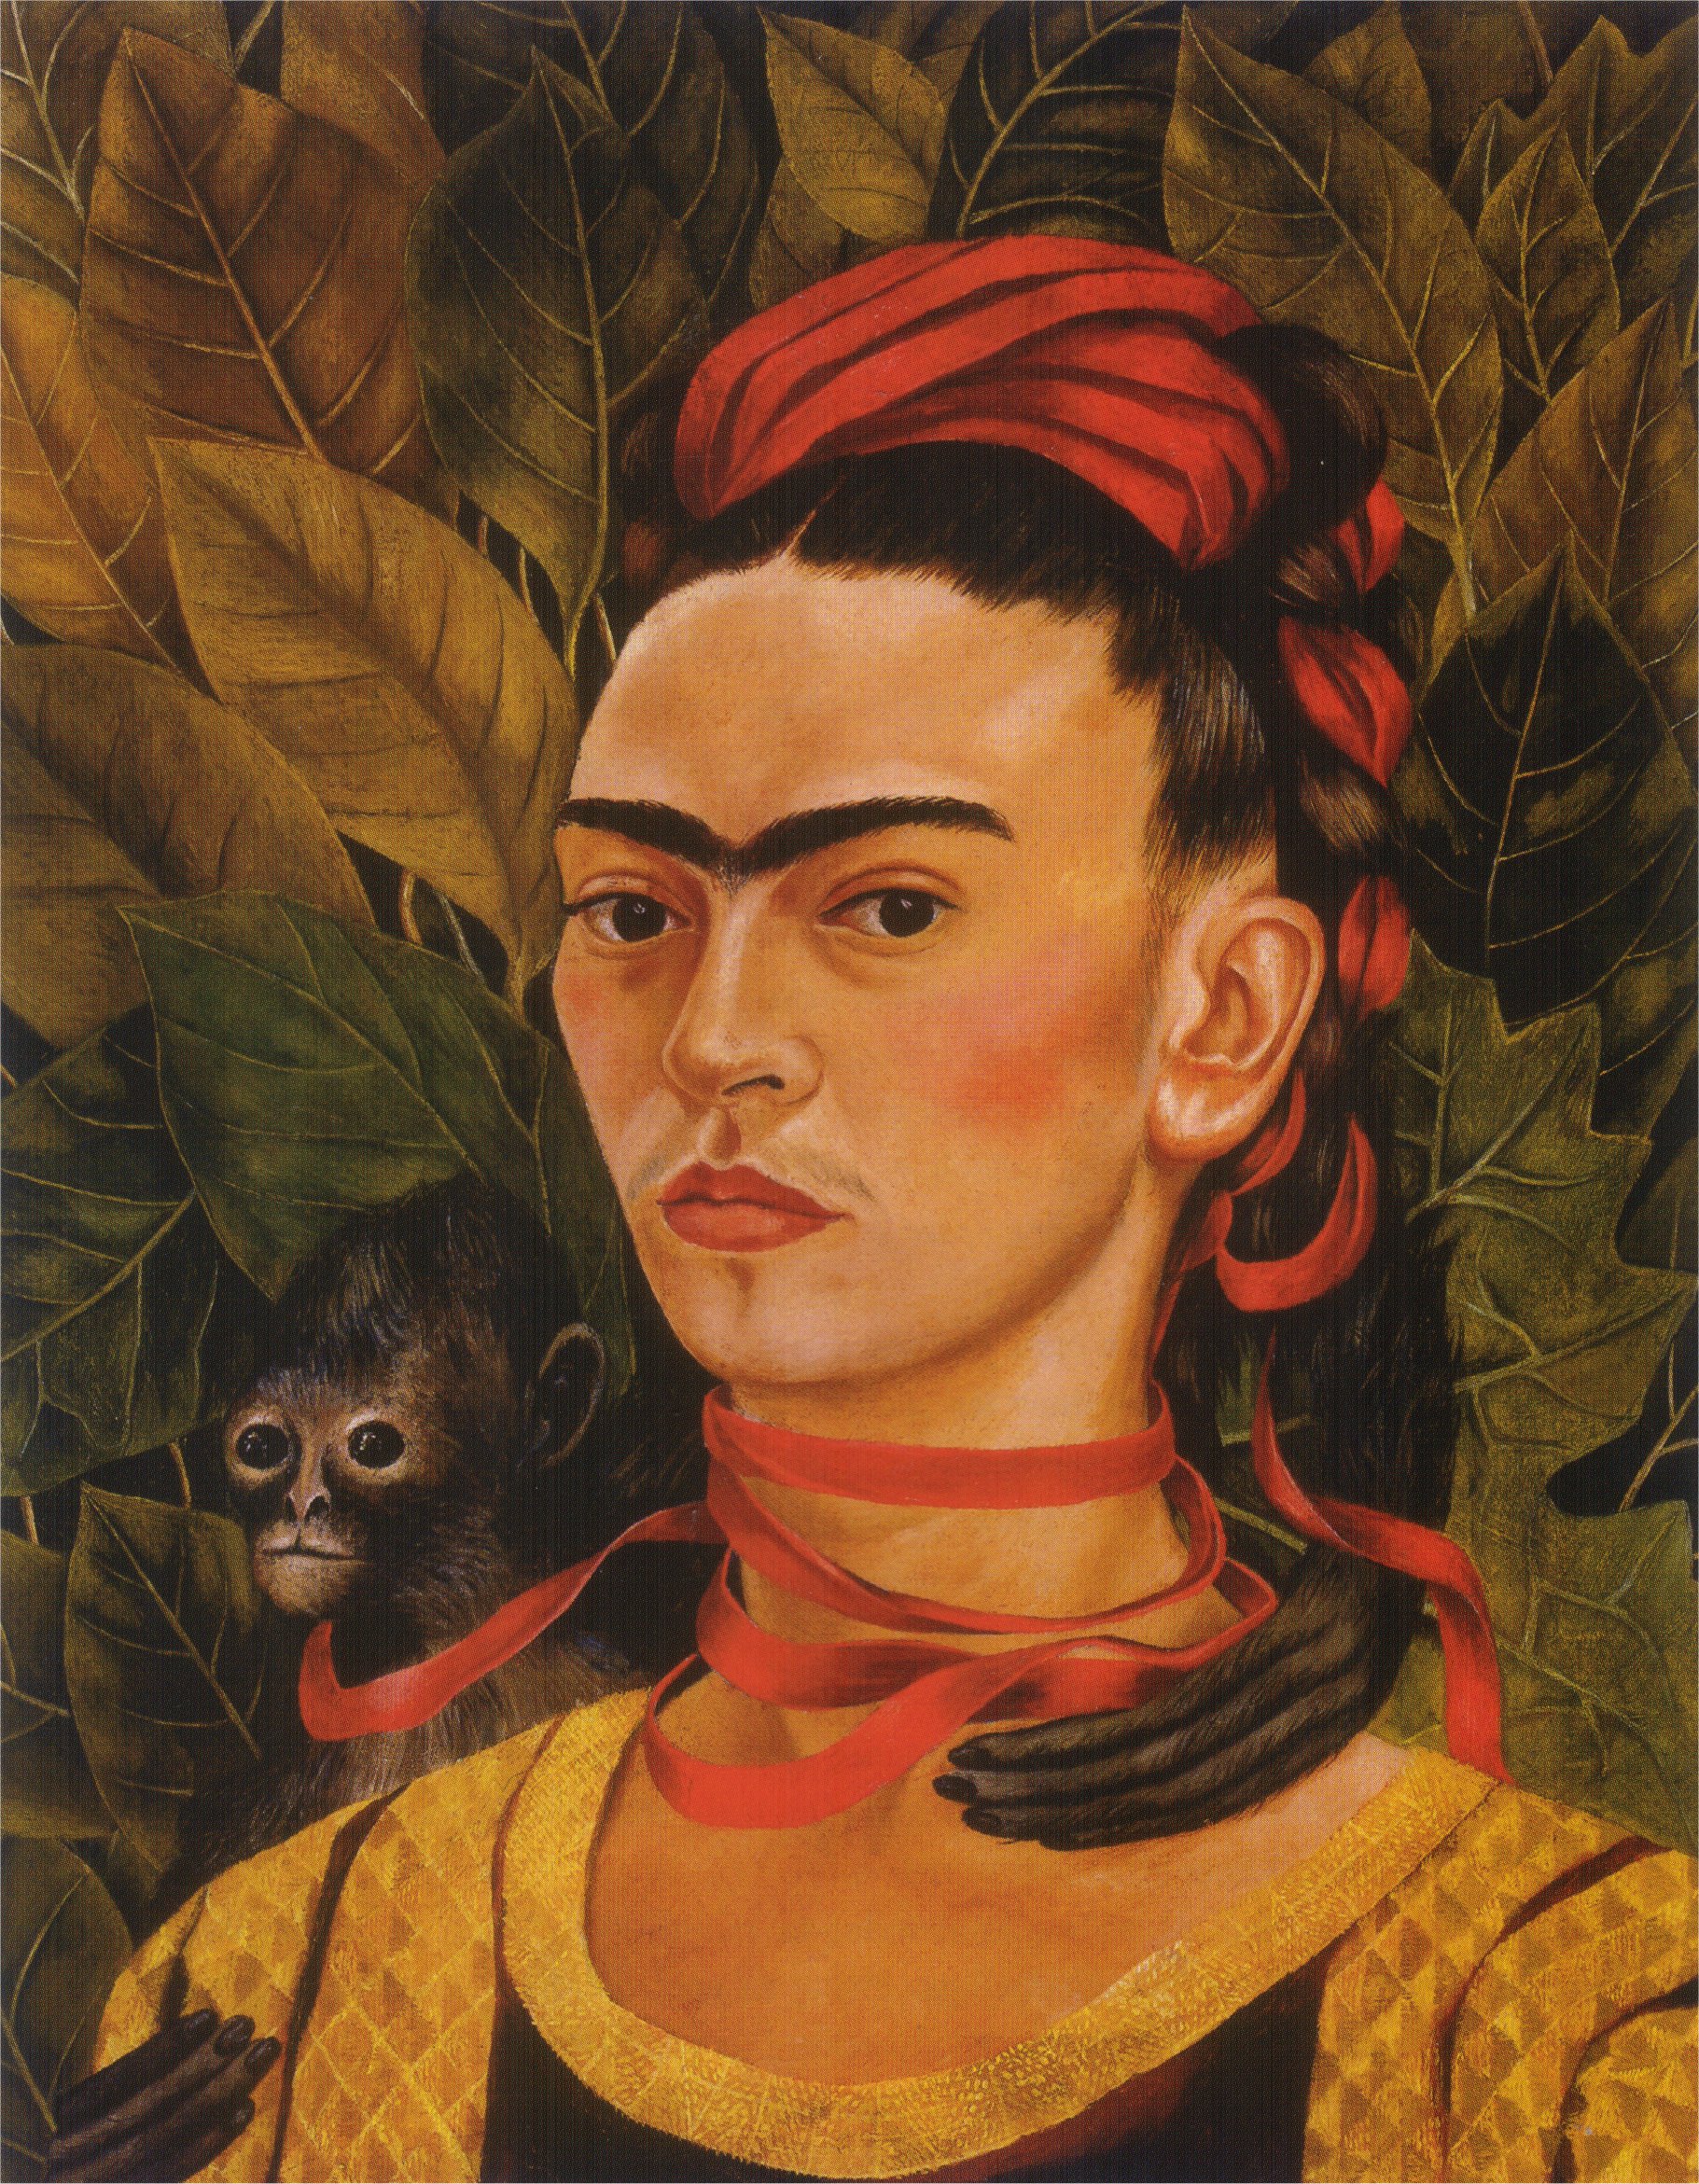 Self Portrait with Monkey (1940).